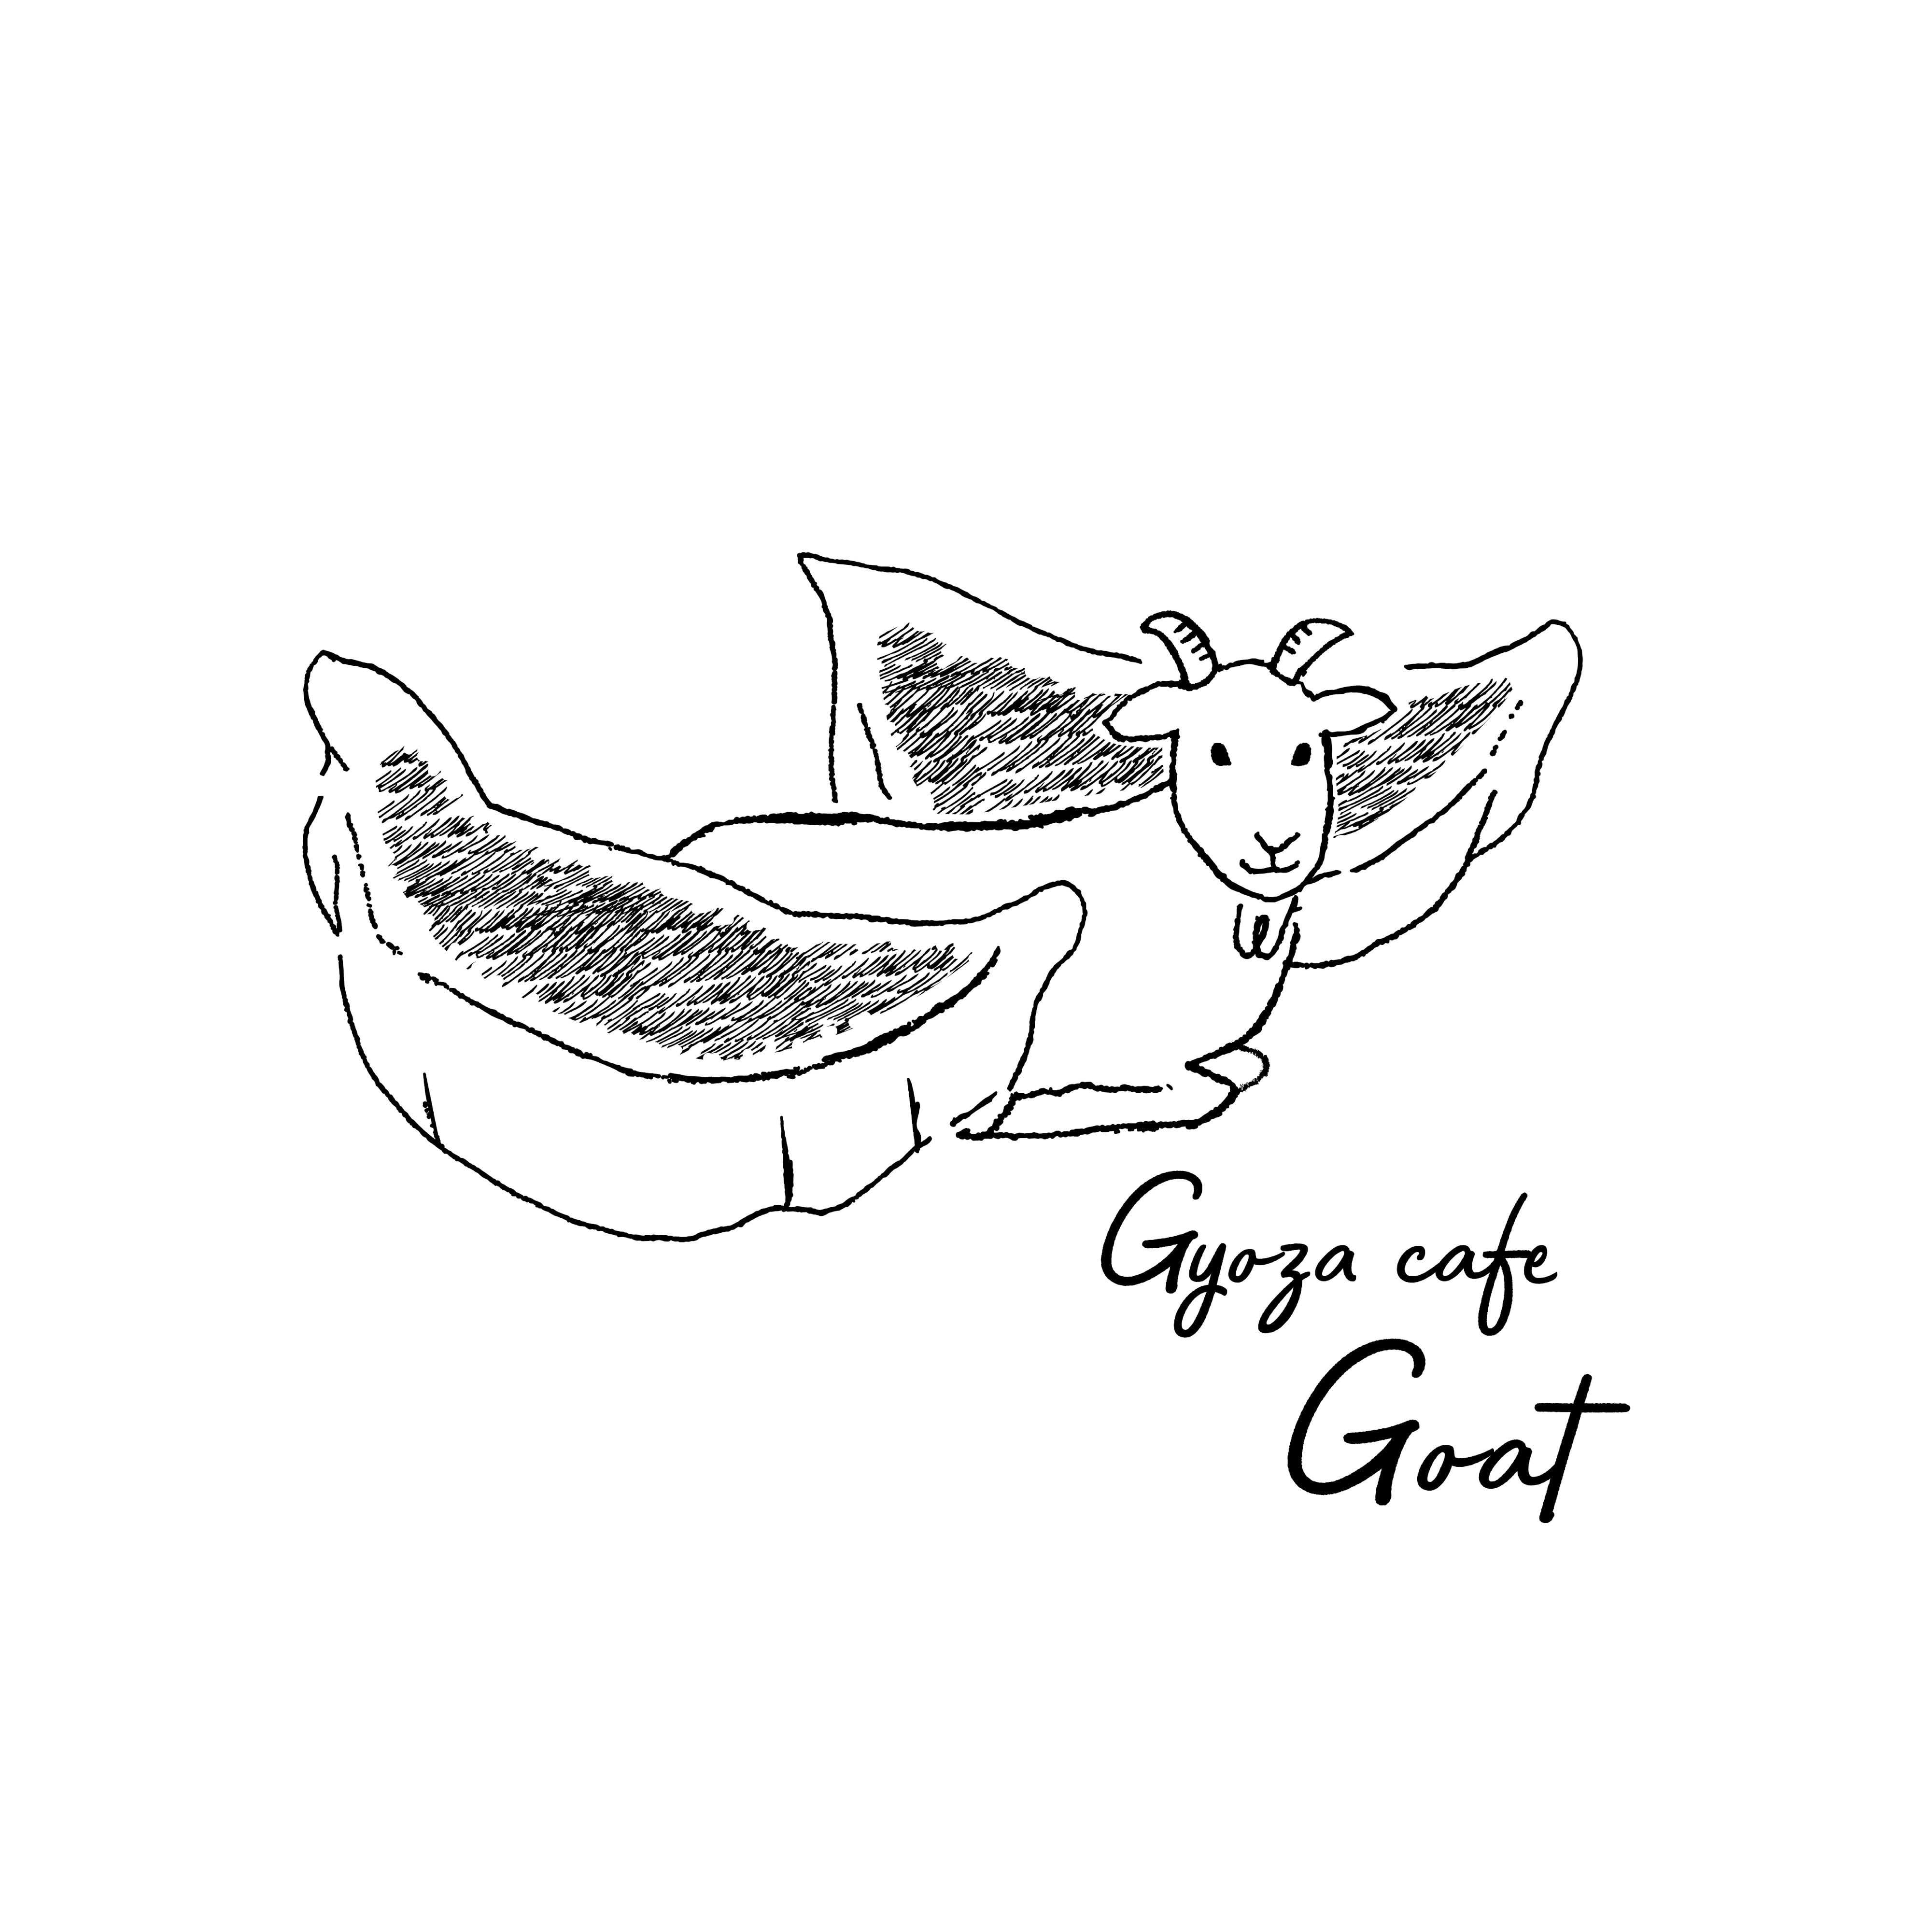 Gyoza cafe Goat